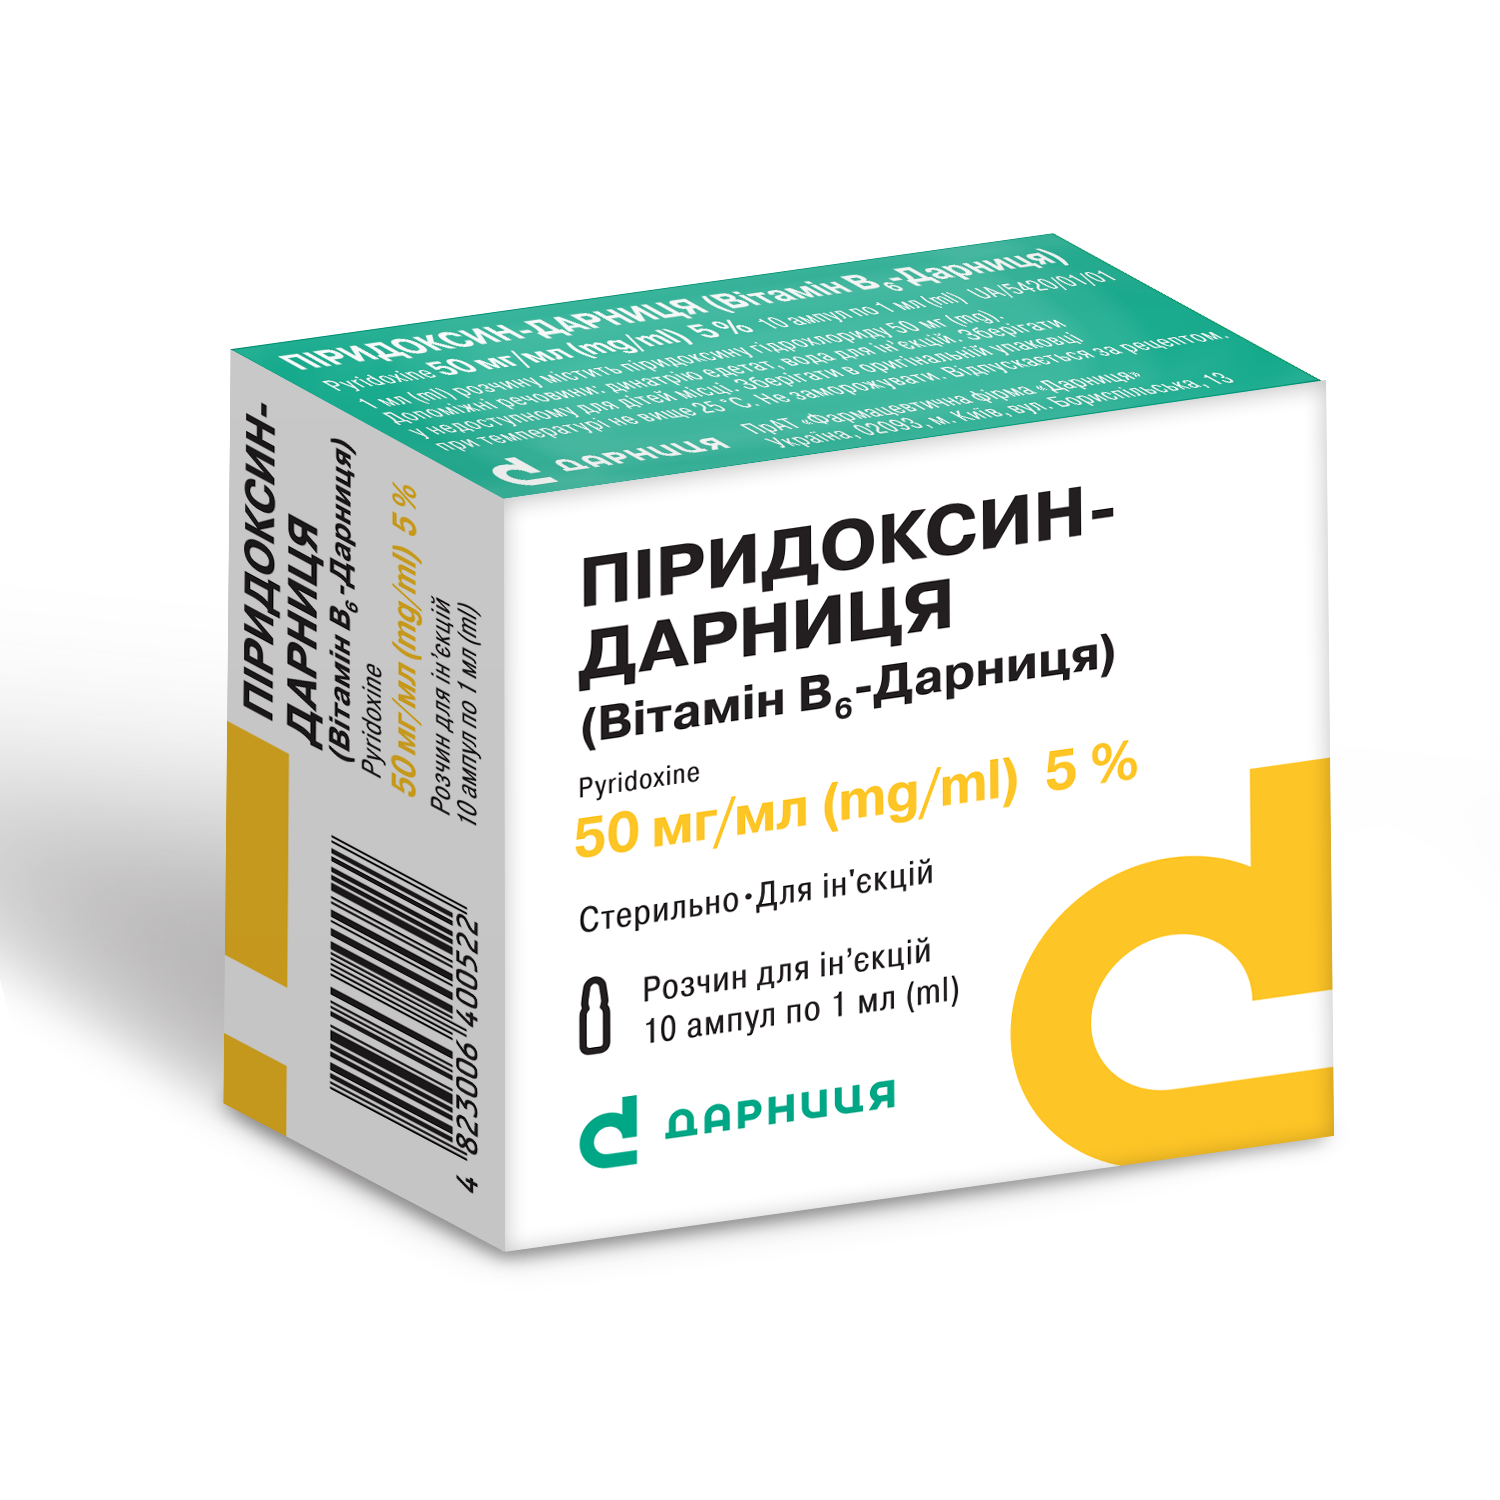 Пиридоксин-Дарница (витамин В6-Дарница) в ампулах: инструкция и показания